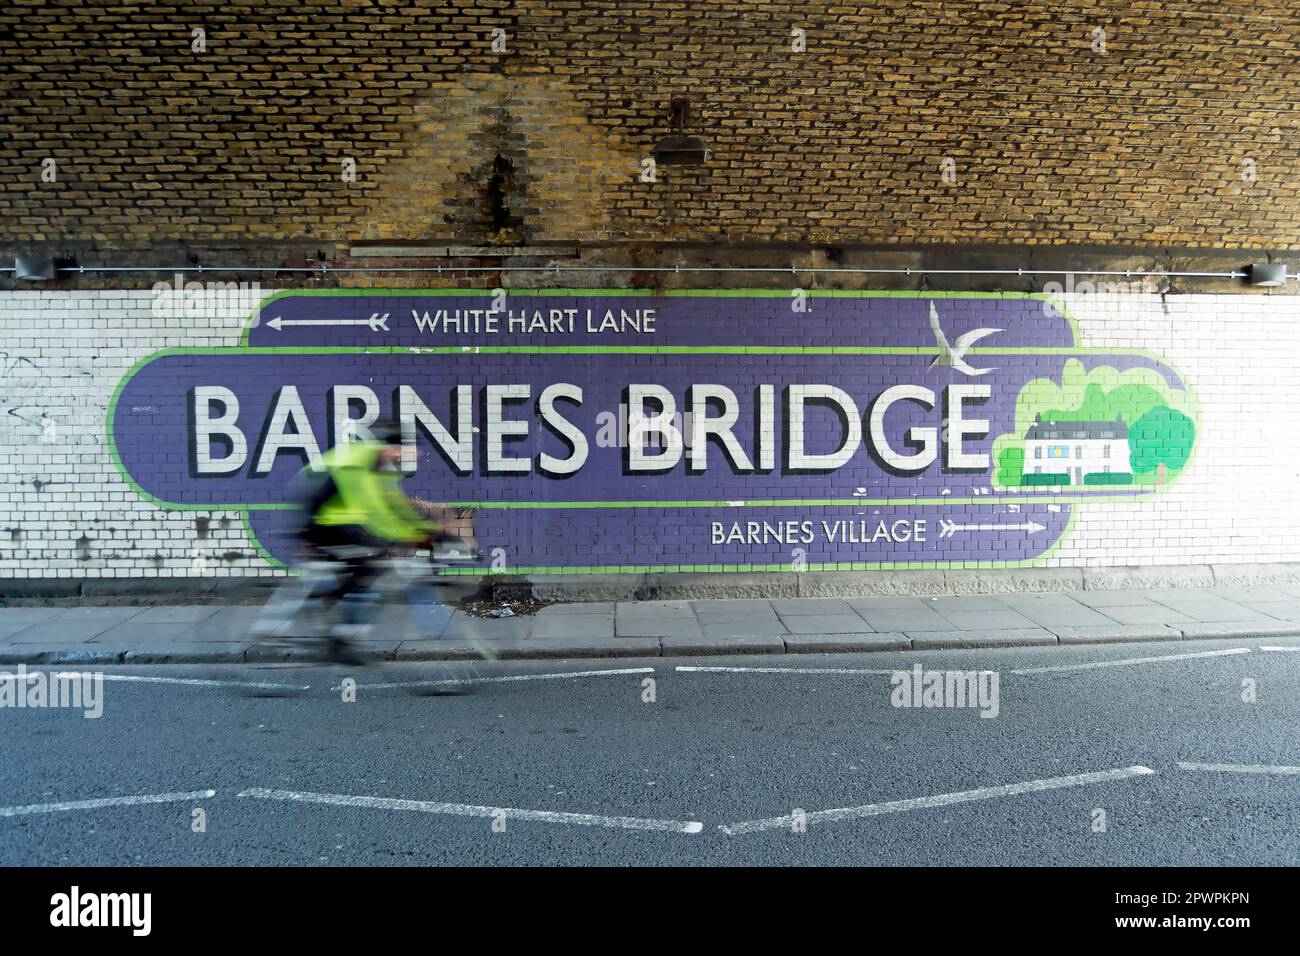 le cycliste vu en mouvement flou passe un panneau mural sous le pont ferroviaire barnes donnant des indications vers les destinations locales, barnes, sud-ouest de londres, angleterre Banque D'Images